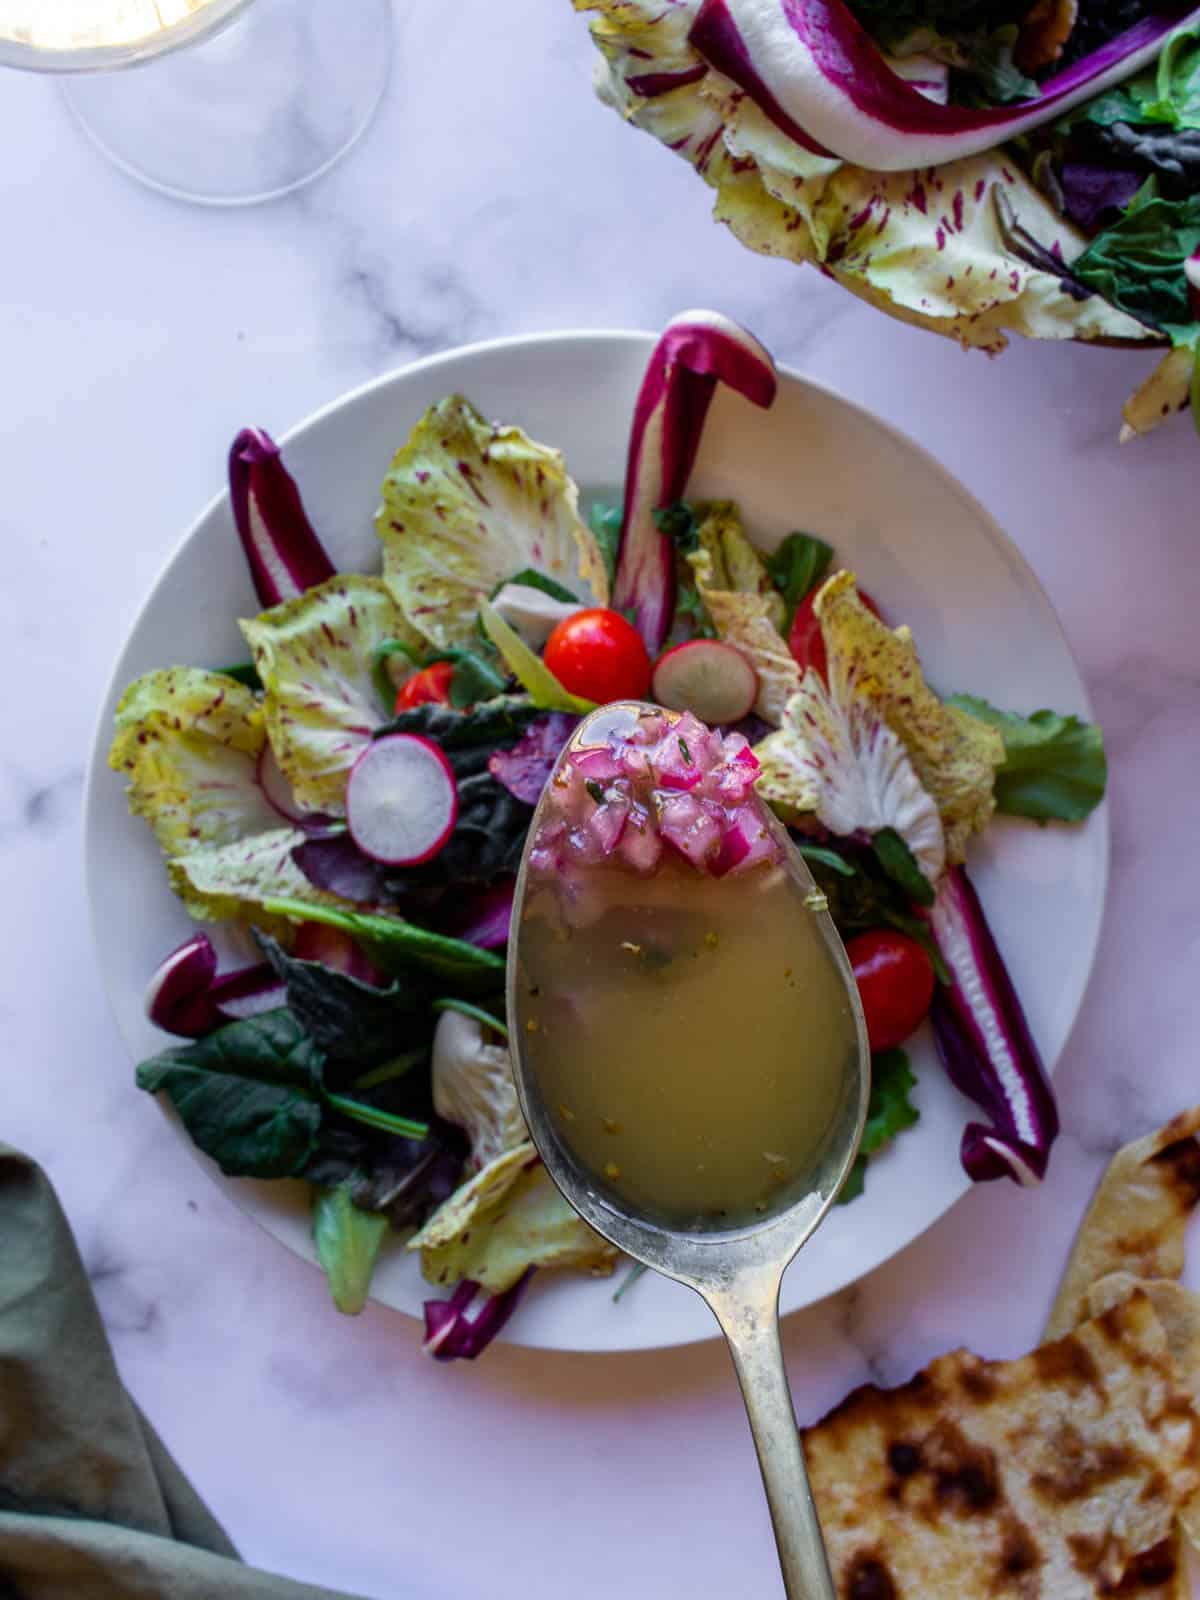 Homemade Vinaigrette Dressing in Salad